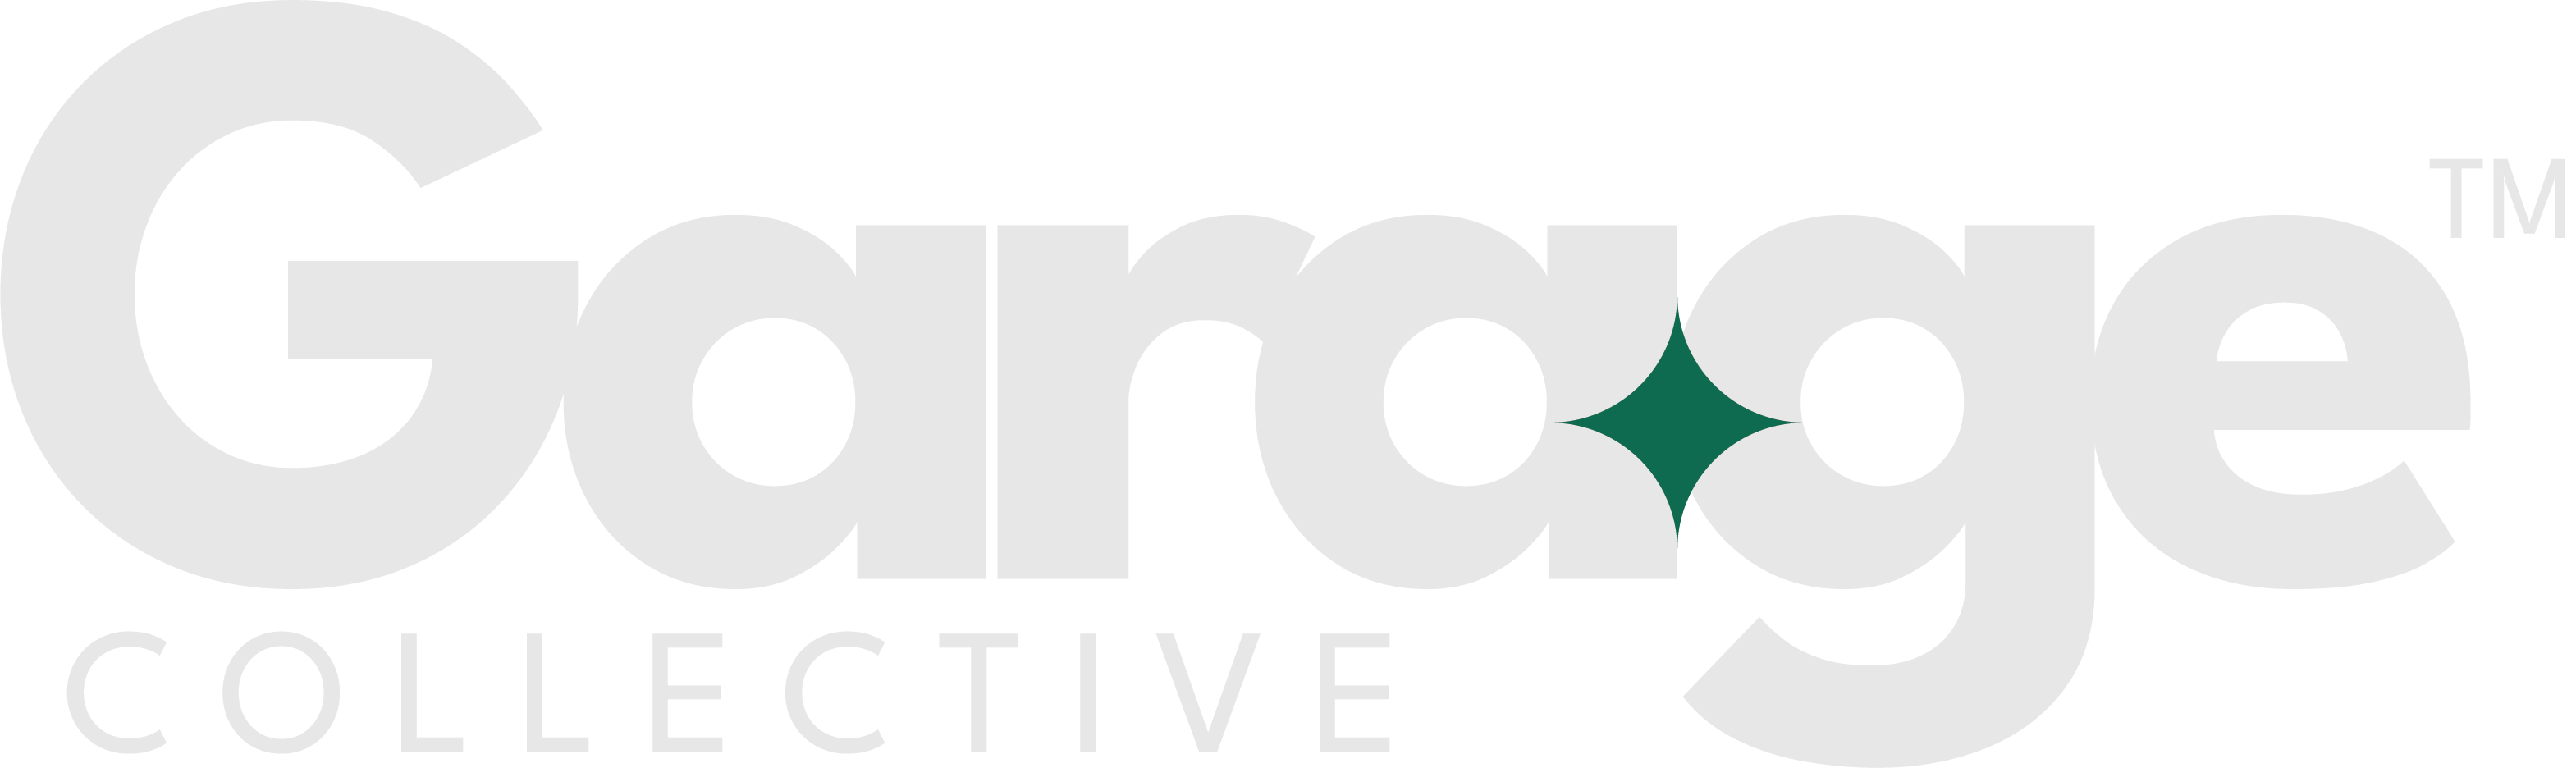 garage collectove logo